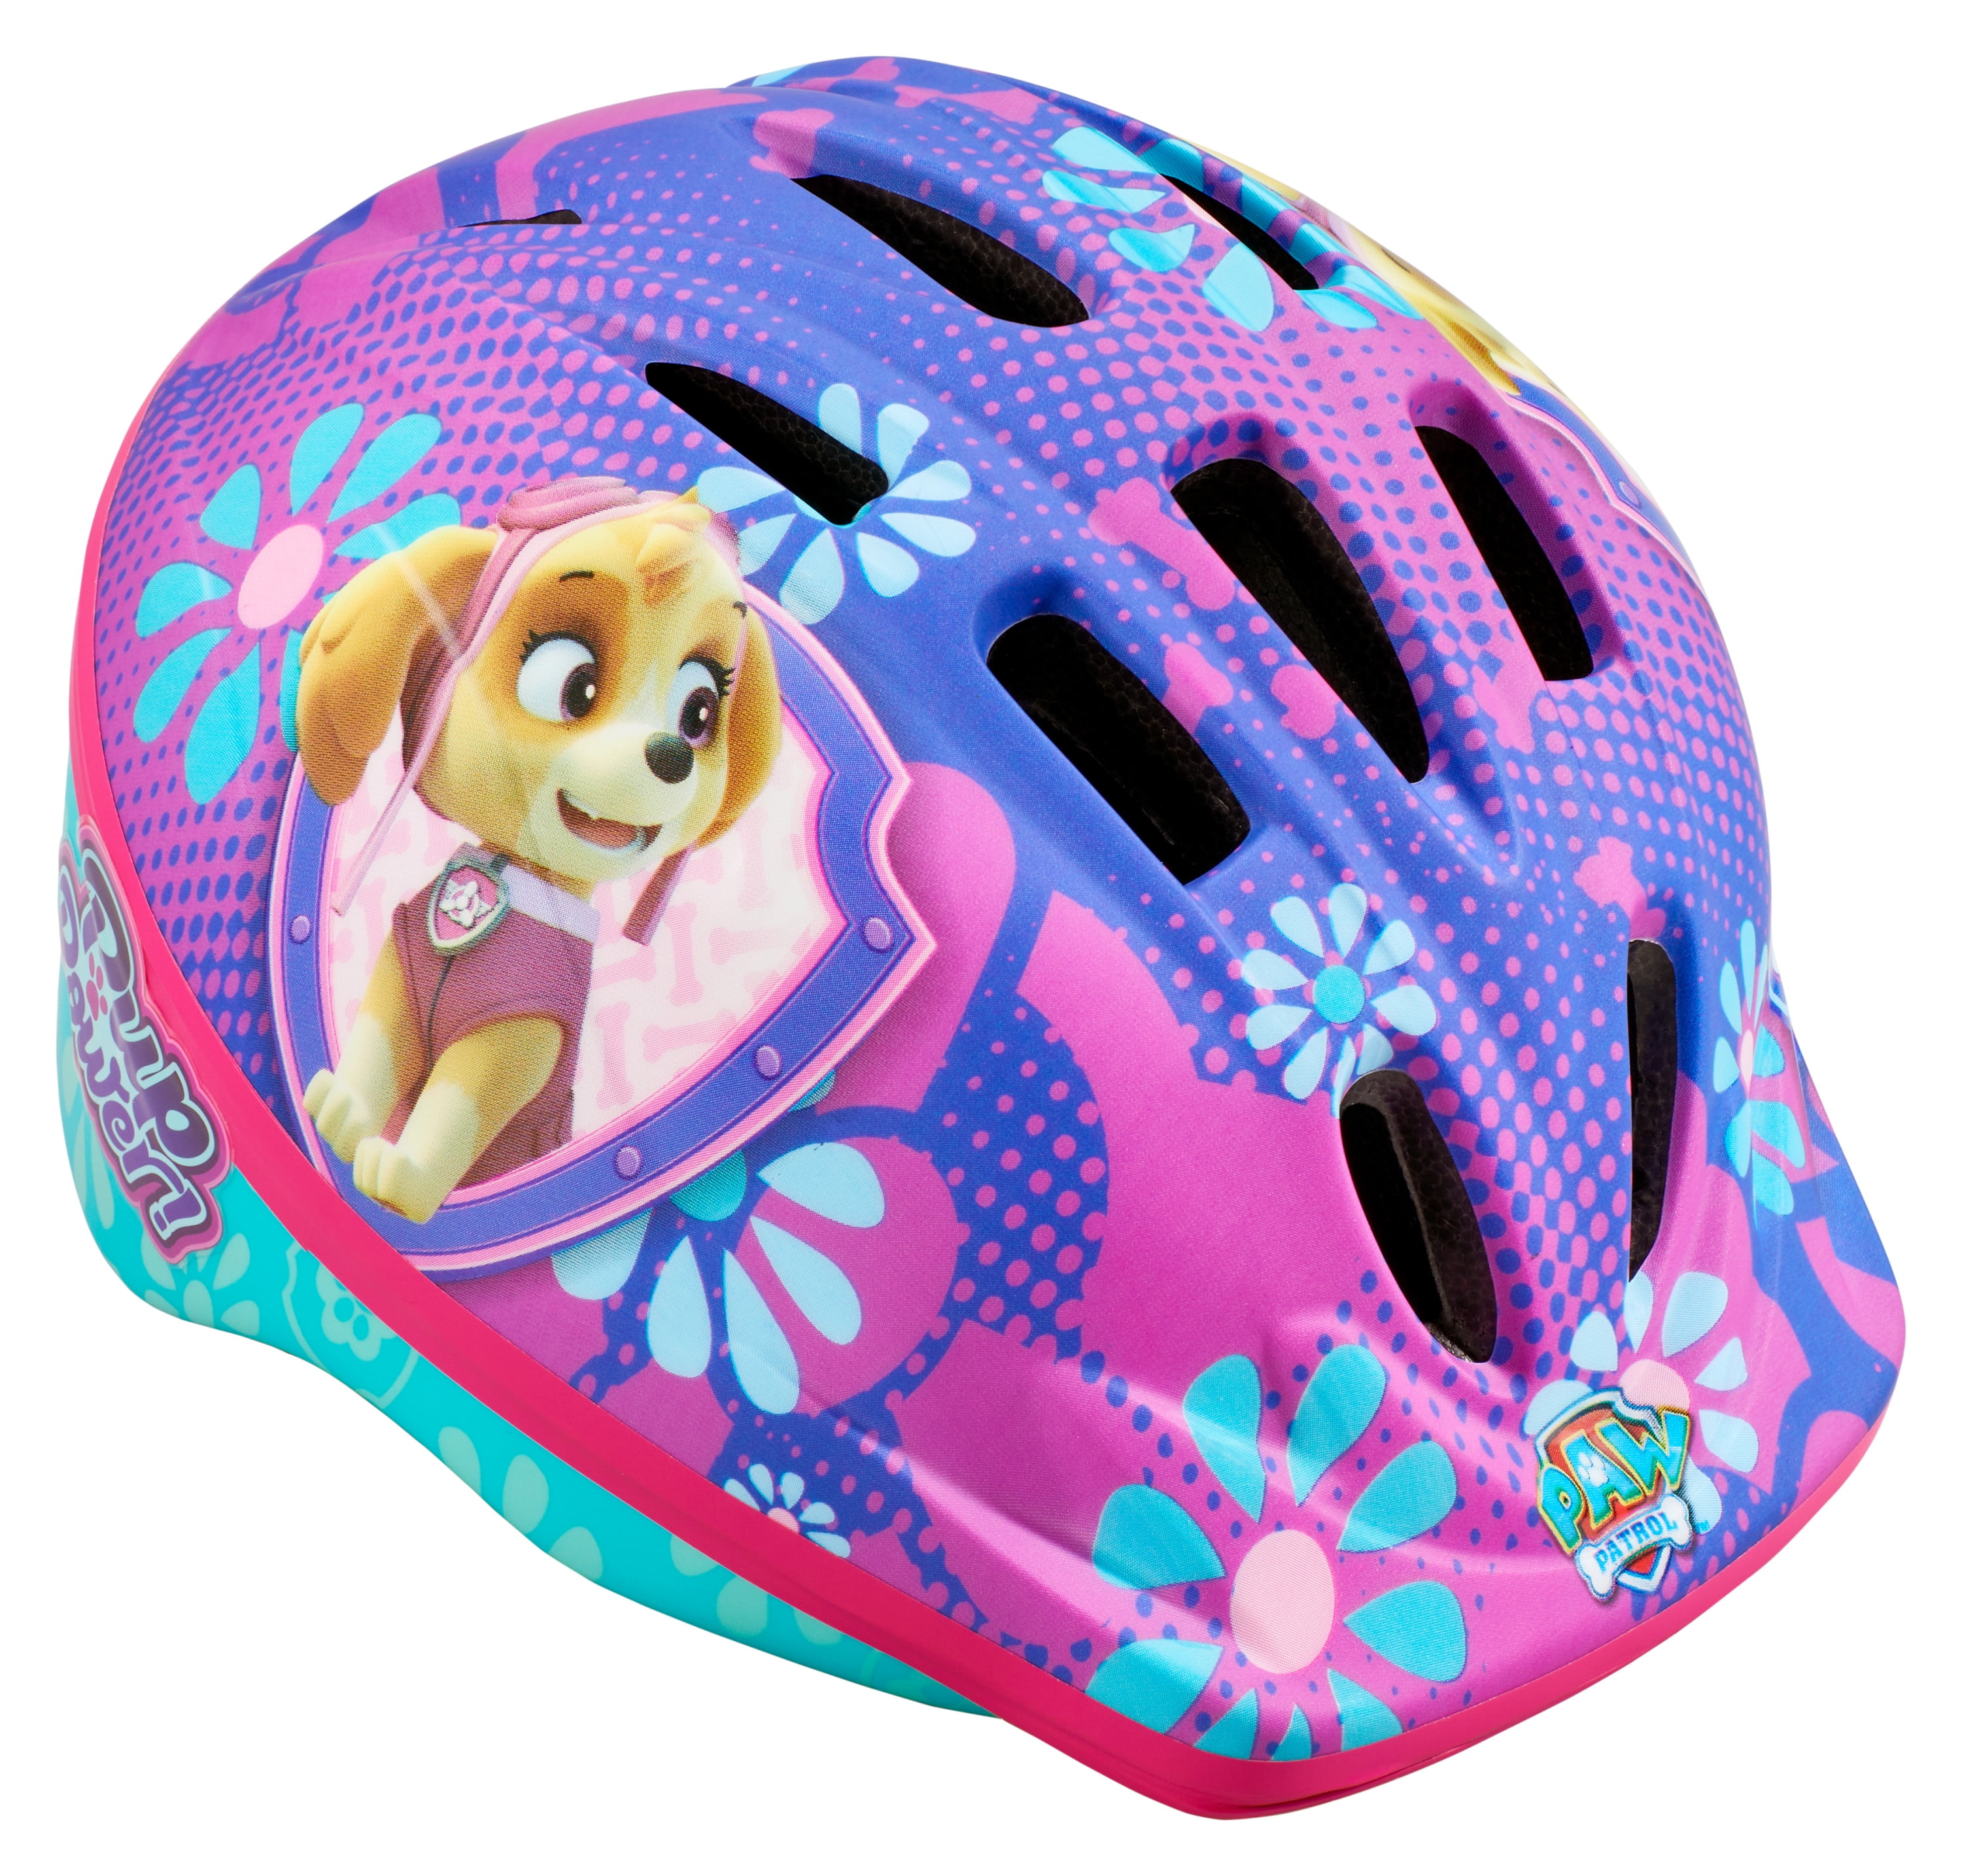 Nickelodeon Paw Patrol: Skye Bike Helmet, Ages 3-5, Purple & Blue